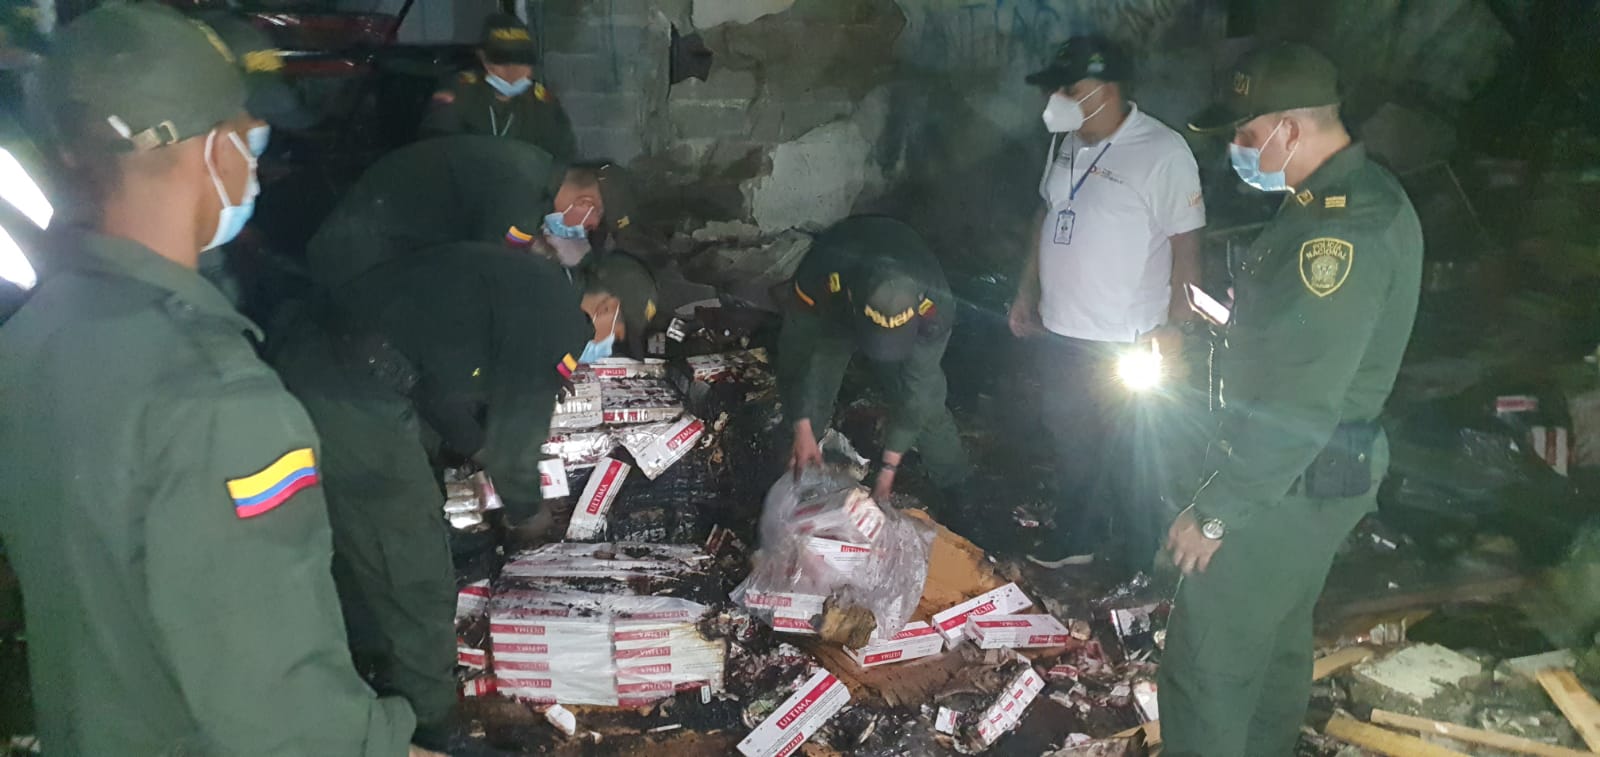 Encuentran caleta de contrabando de cigarrillos en casa donde ocurrió la explosión en La Granja